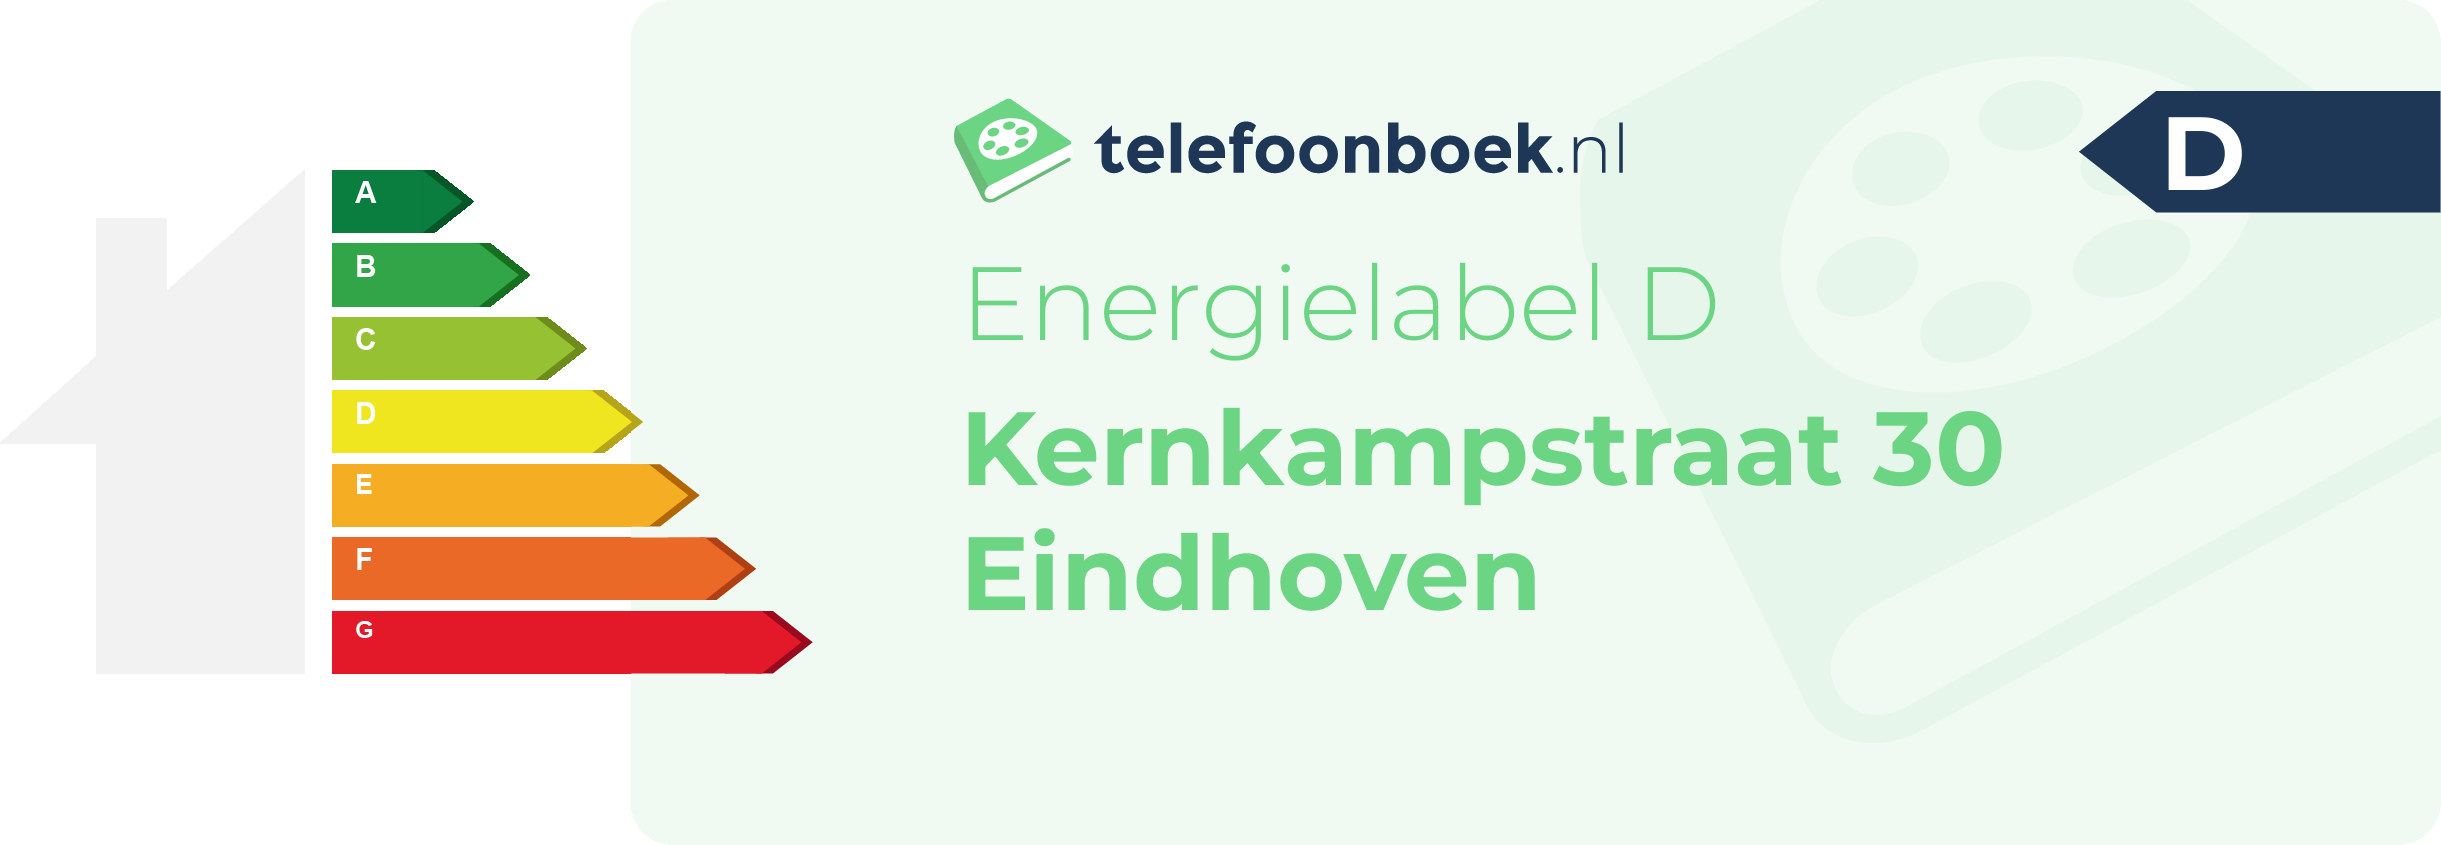 Energielabel Kernkampstraat 30 Eindhoven